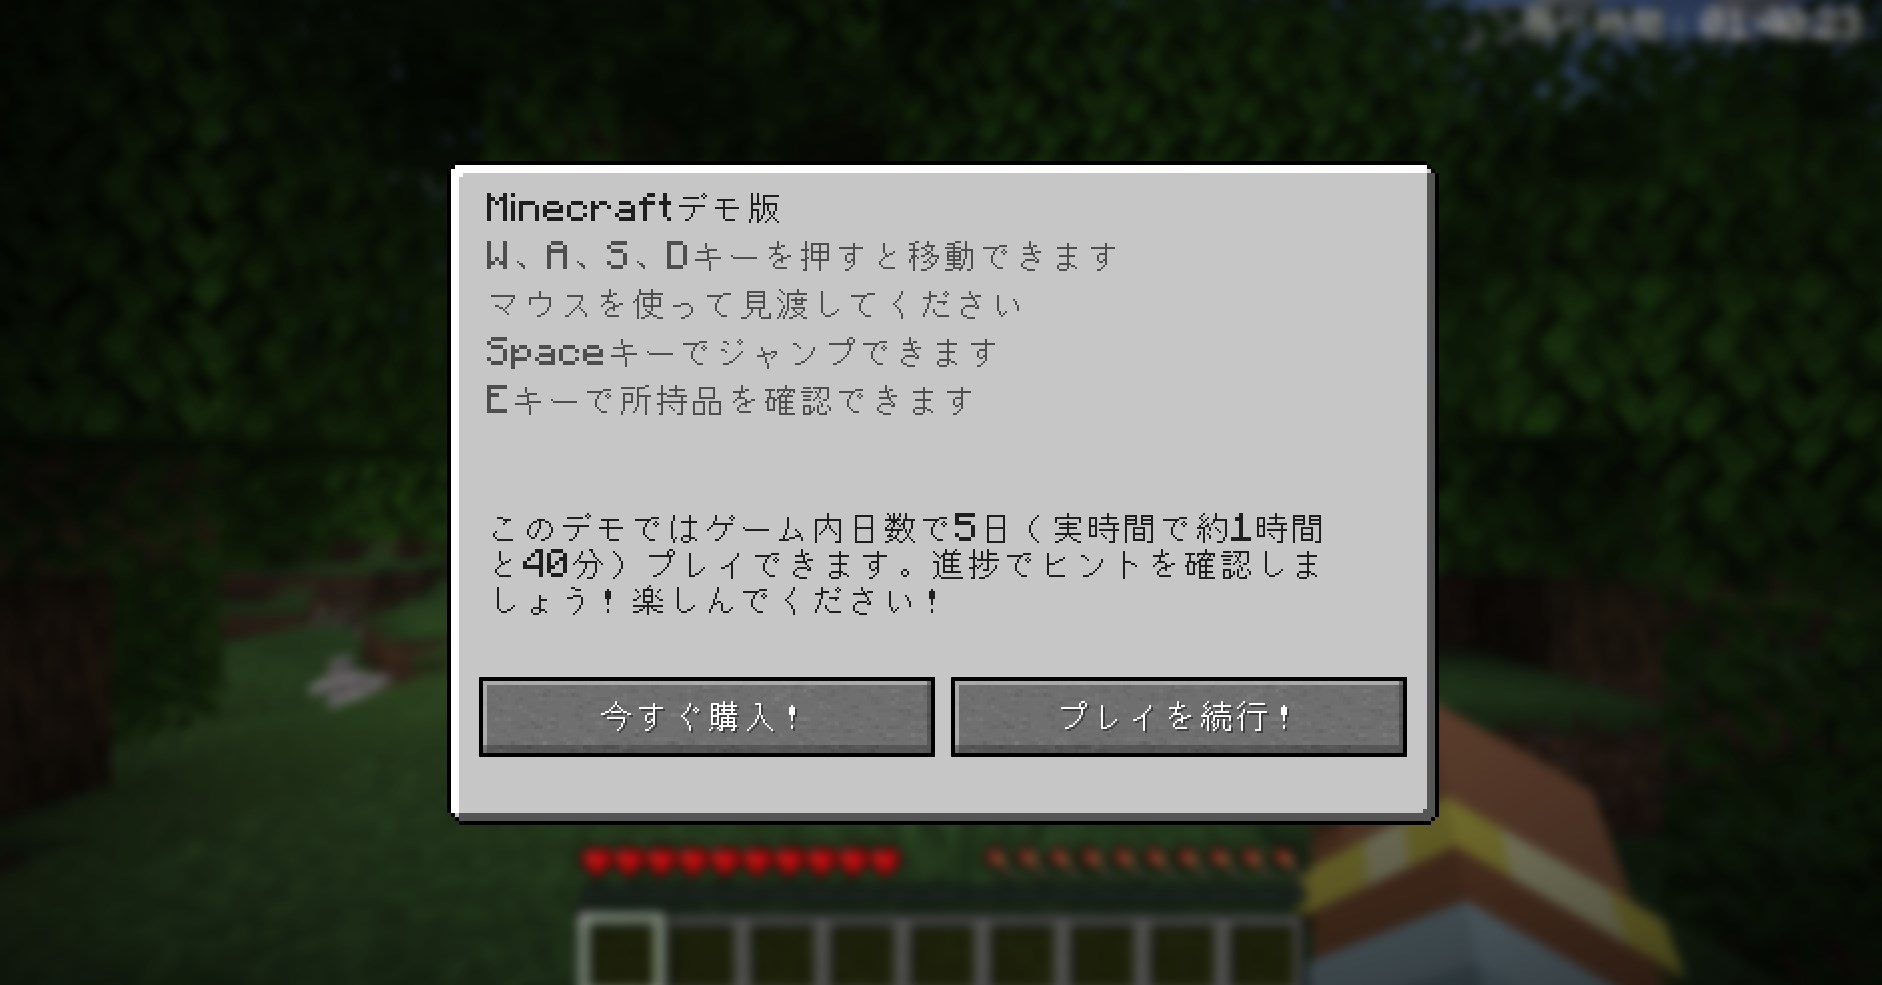 「Minecraftの無料試遊版」ができる期間は「5日間」で、「1時間40分」プレイすると終了